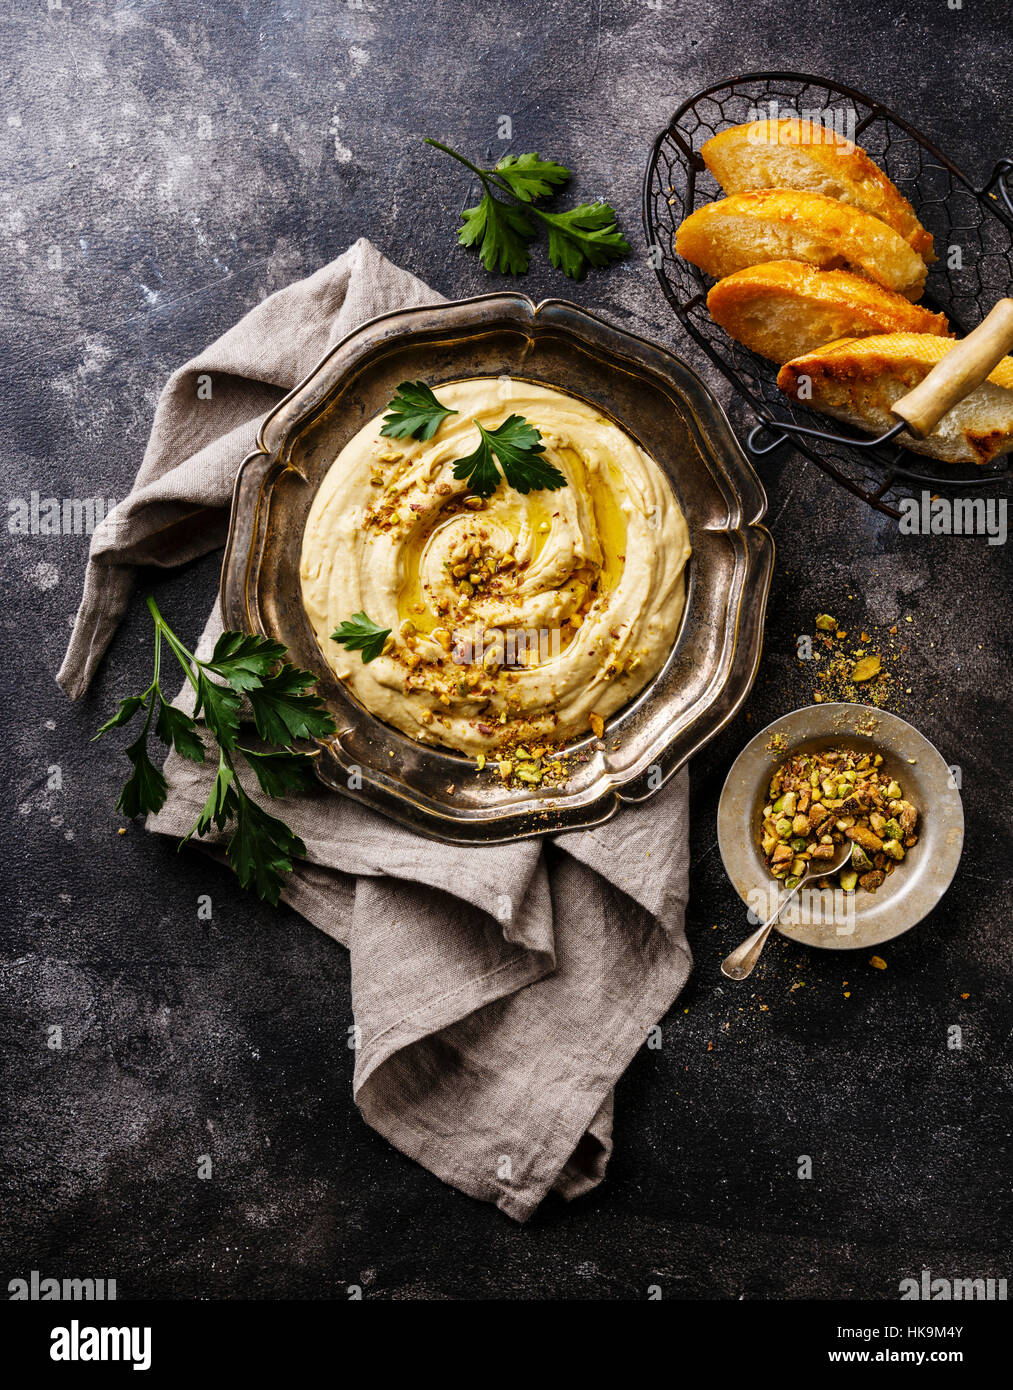 Hummus casero con los pistachos y las tostadas de pan en la placa metálica negra sobre fondo de piedra Foto de stock